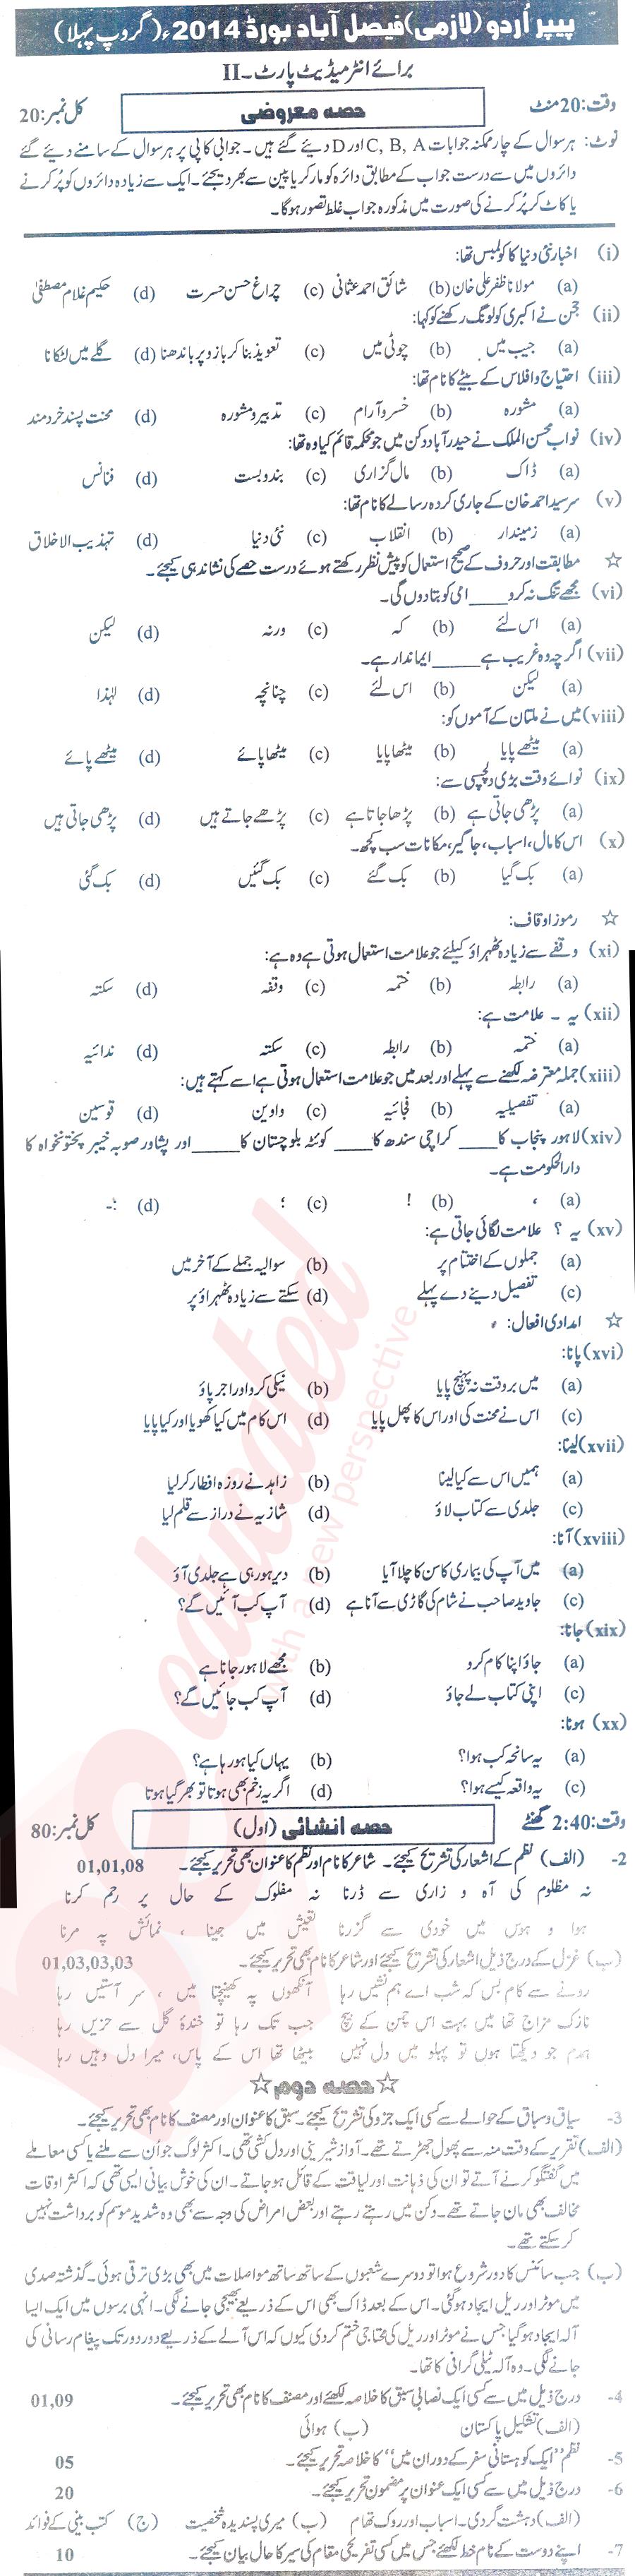 Urdu 12th class Past Paper Group 1 BISE Faisalabad 2014